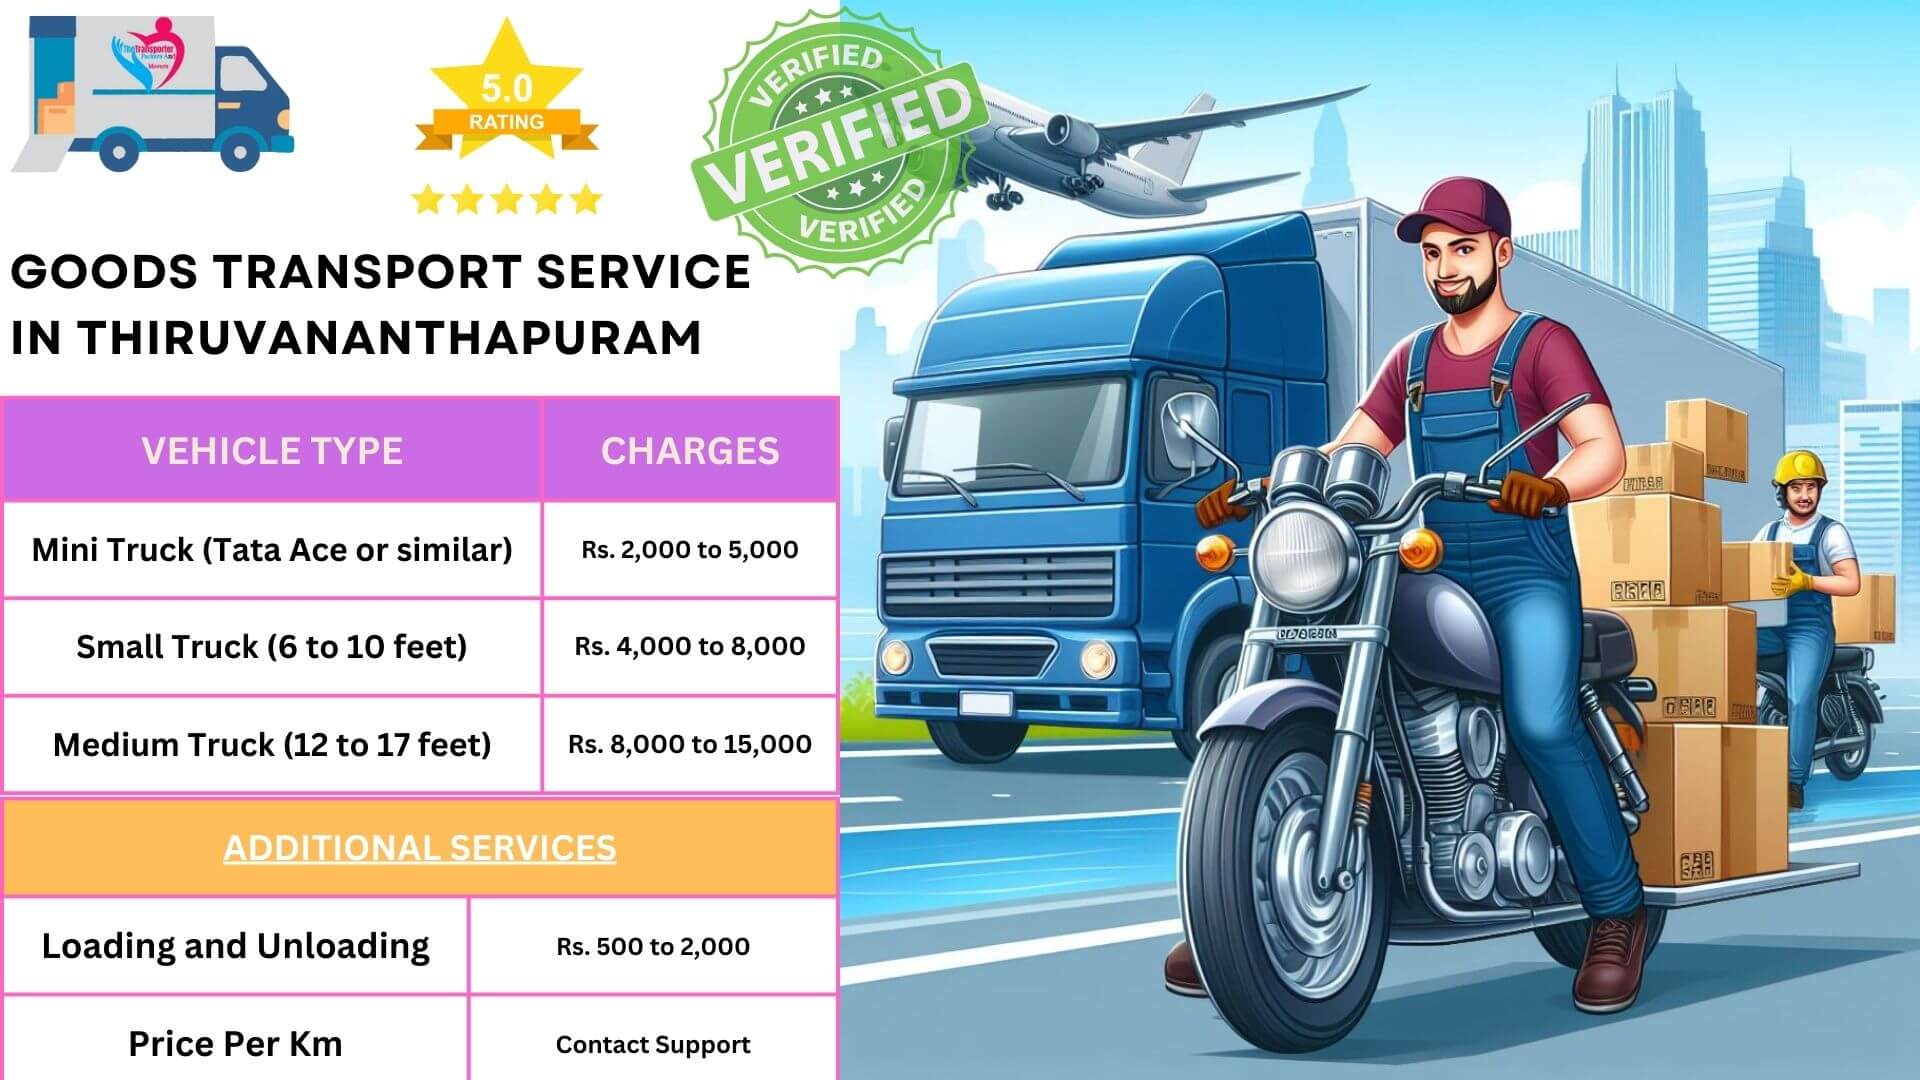 Goods transport services in Thiruvananthapuram